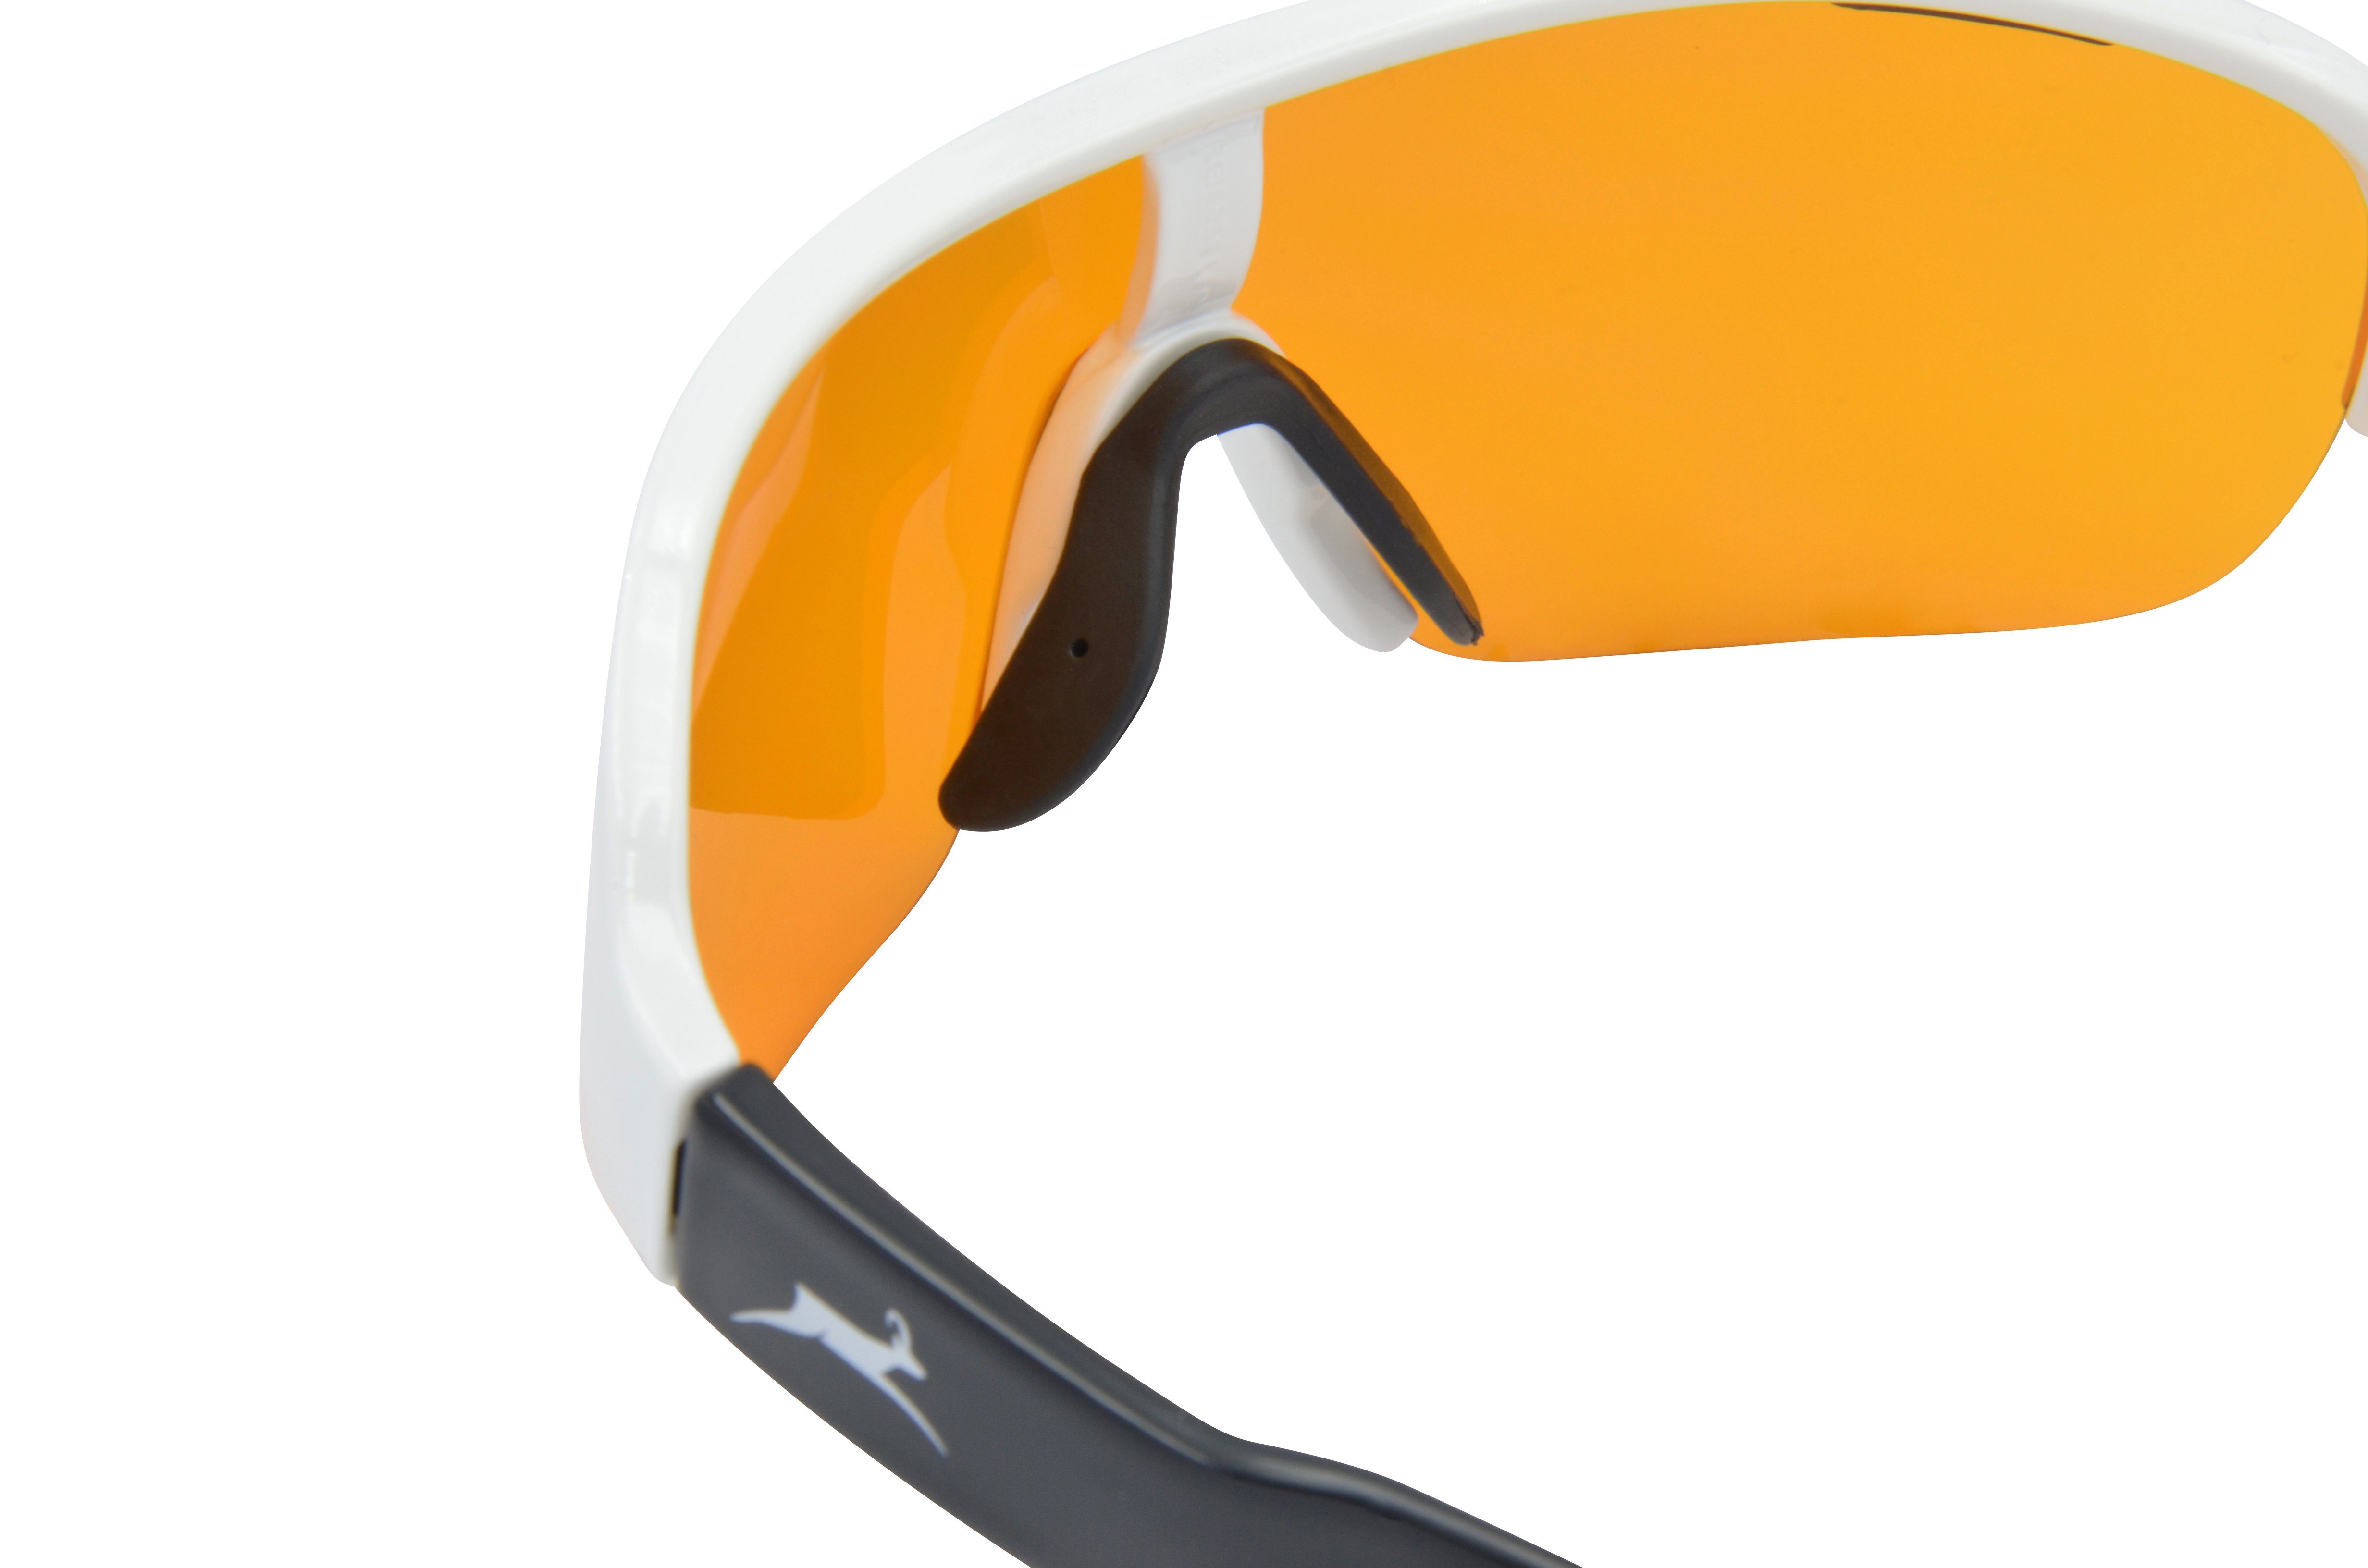 Skibrille Sonnenbrille Herren Fahrradbrille schwarz, TR90 Sportbrille Unisex, blau, WS8434 weiß, Gamswild Damen